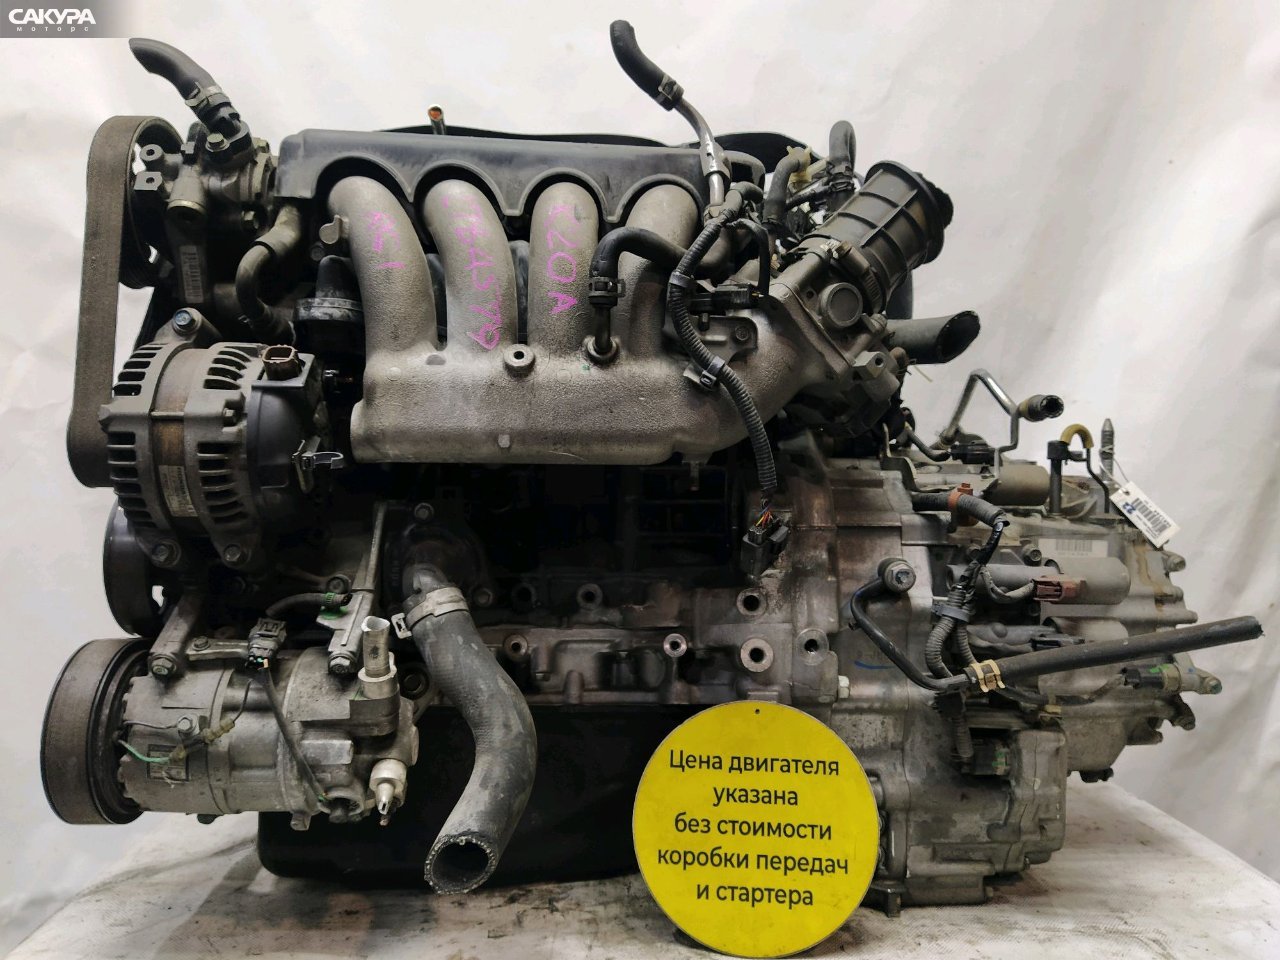 Двигатель Honda Stepwgn RG1 K20A: купить в Сакура Красноярск.